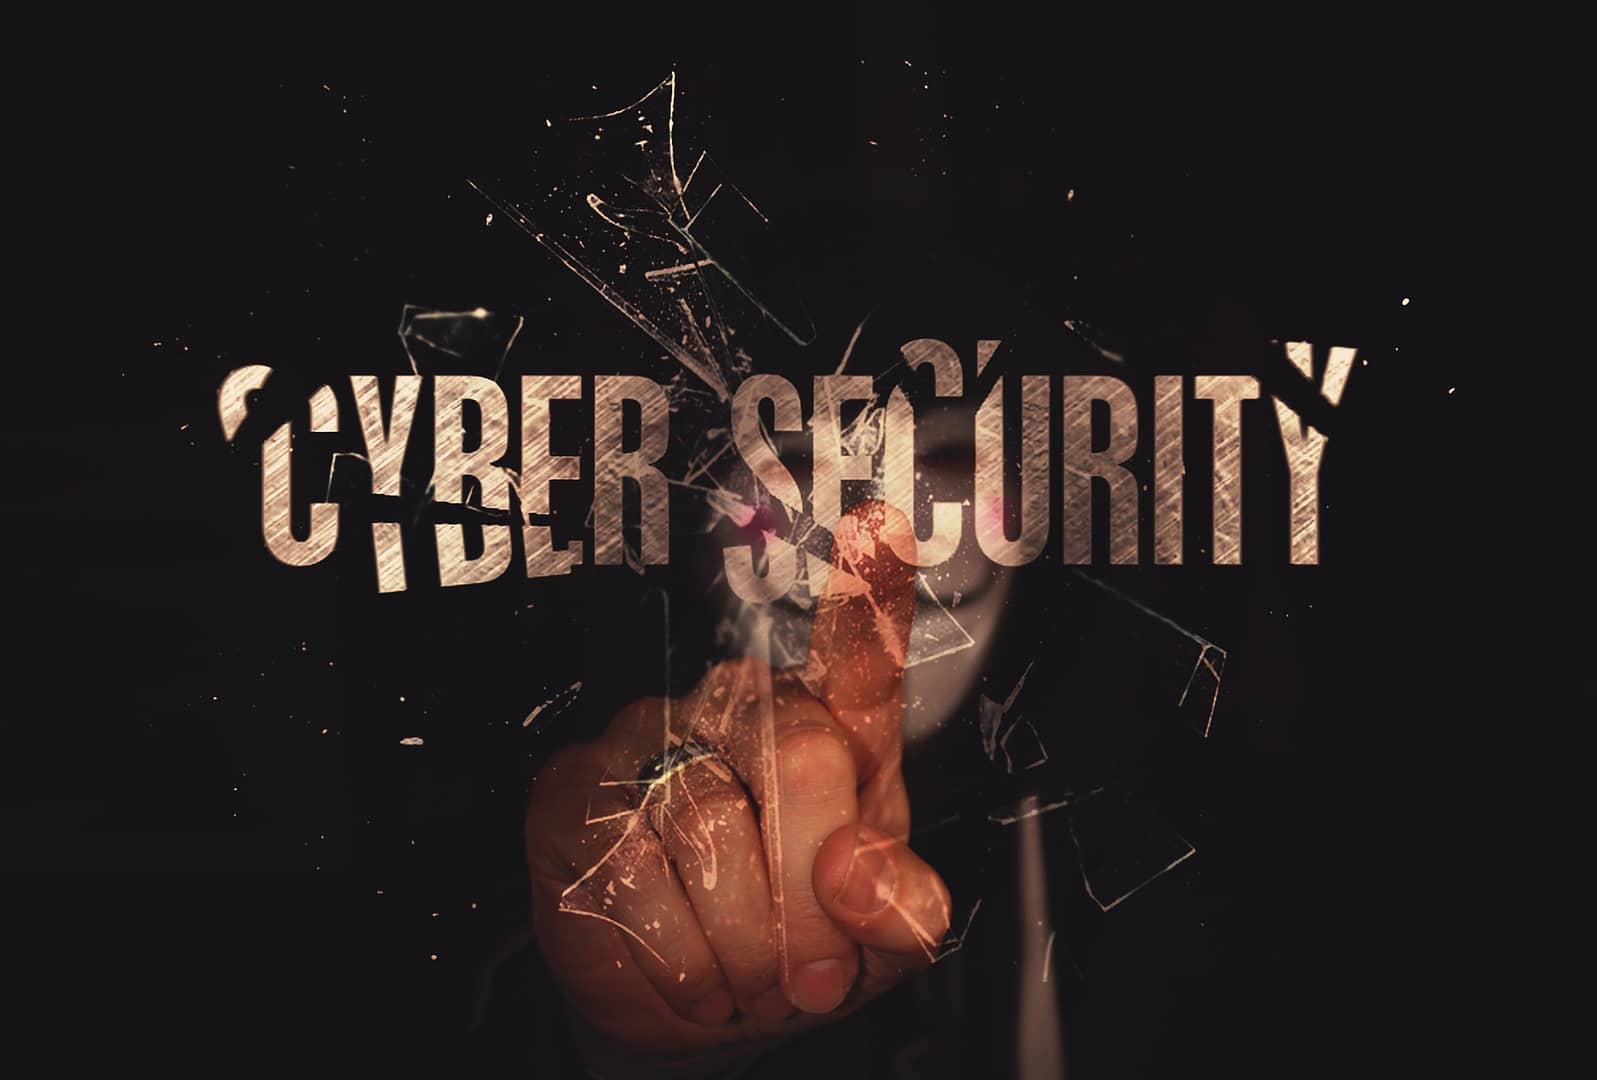 Como garantir a segurança digital na era das ciberameaças?